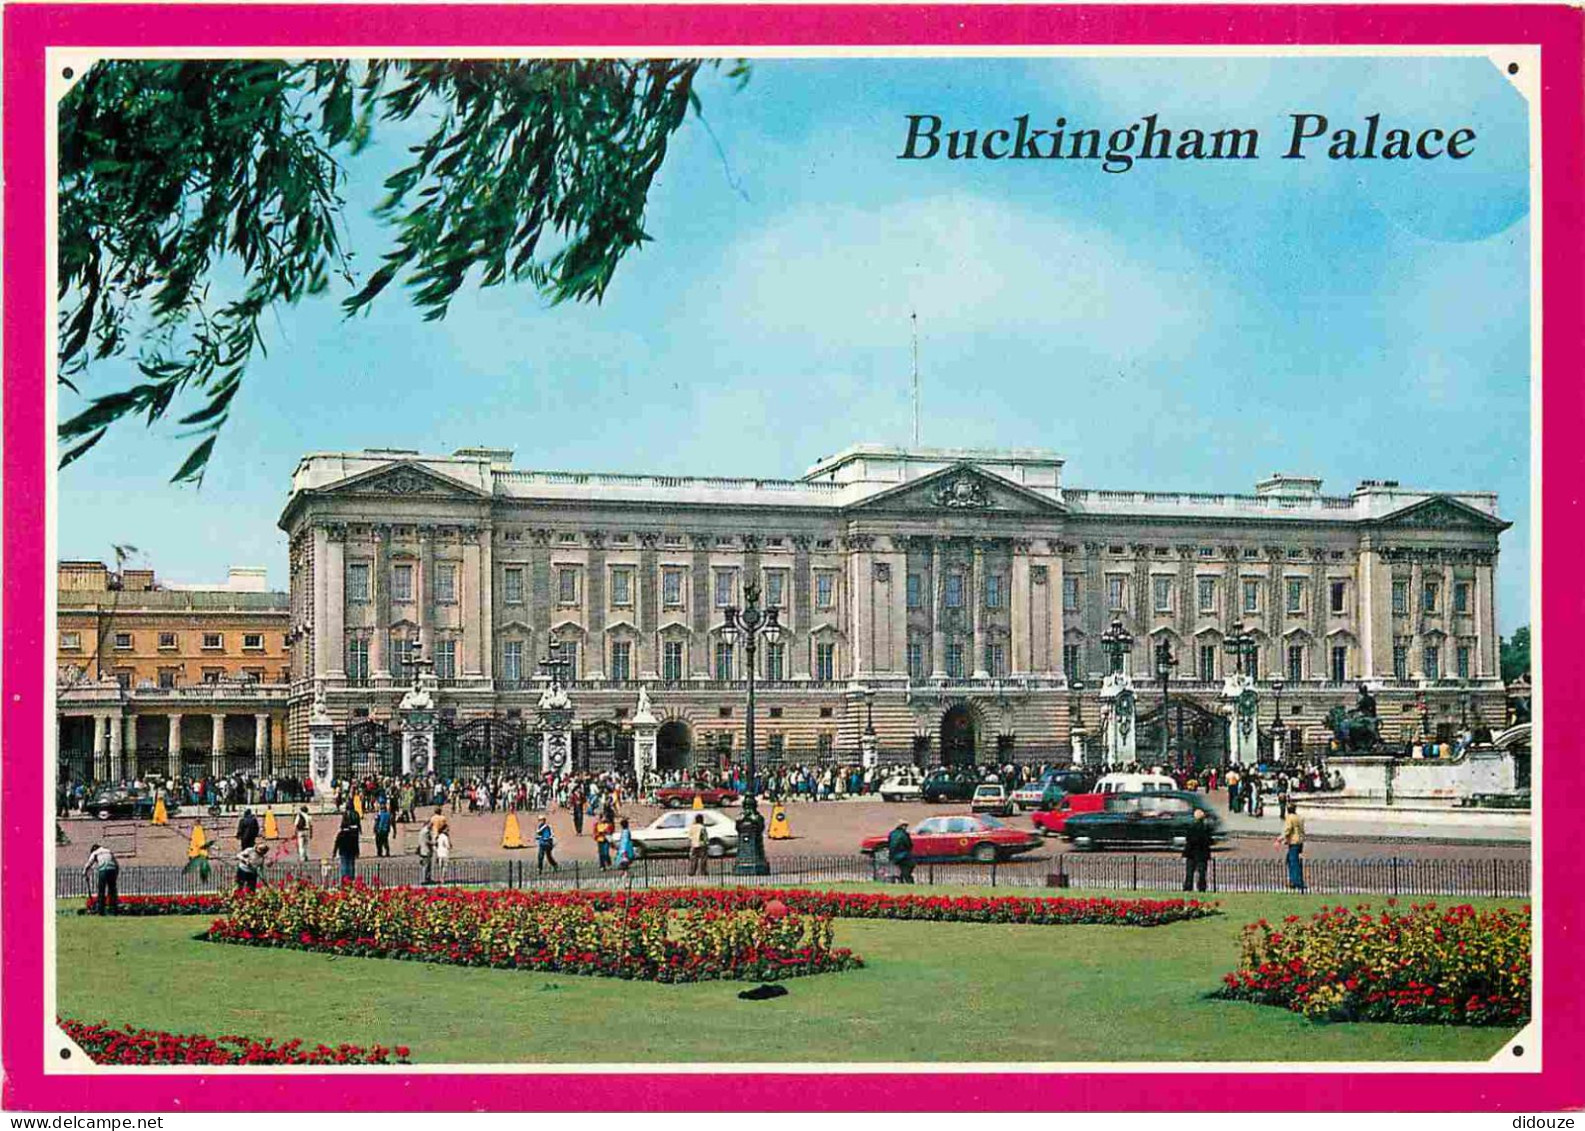 Angleterre - London - Buckingham Palace - Automobiles - London - England - Royaume Uni - UK - United Kingdom - CPM - Car - Buckingham Palace